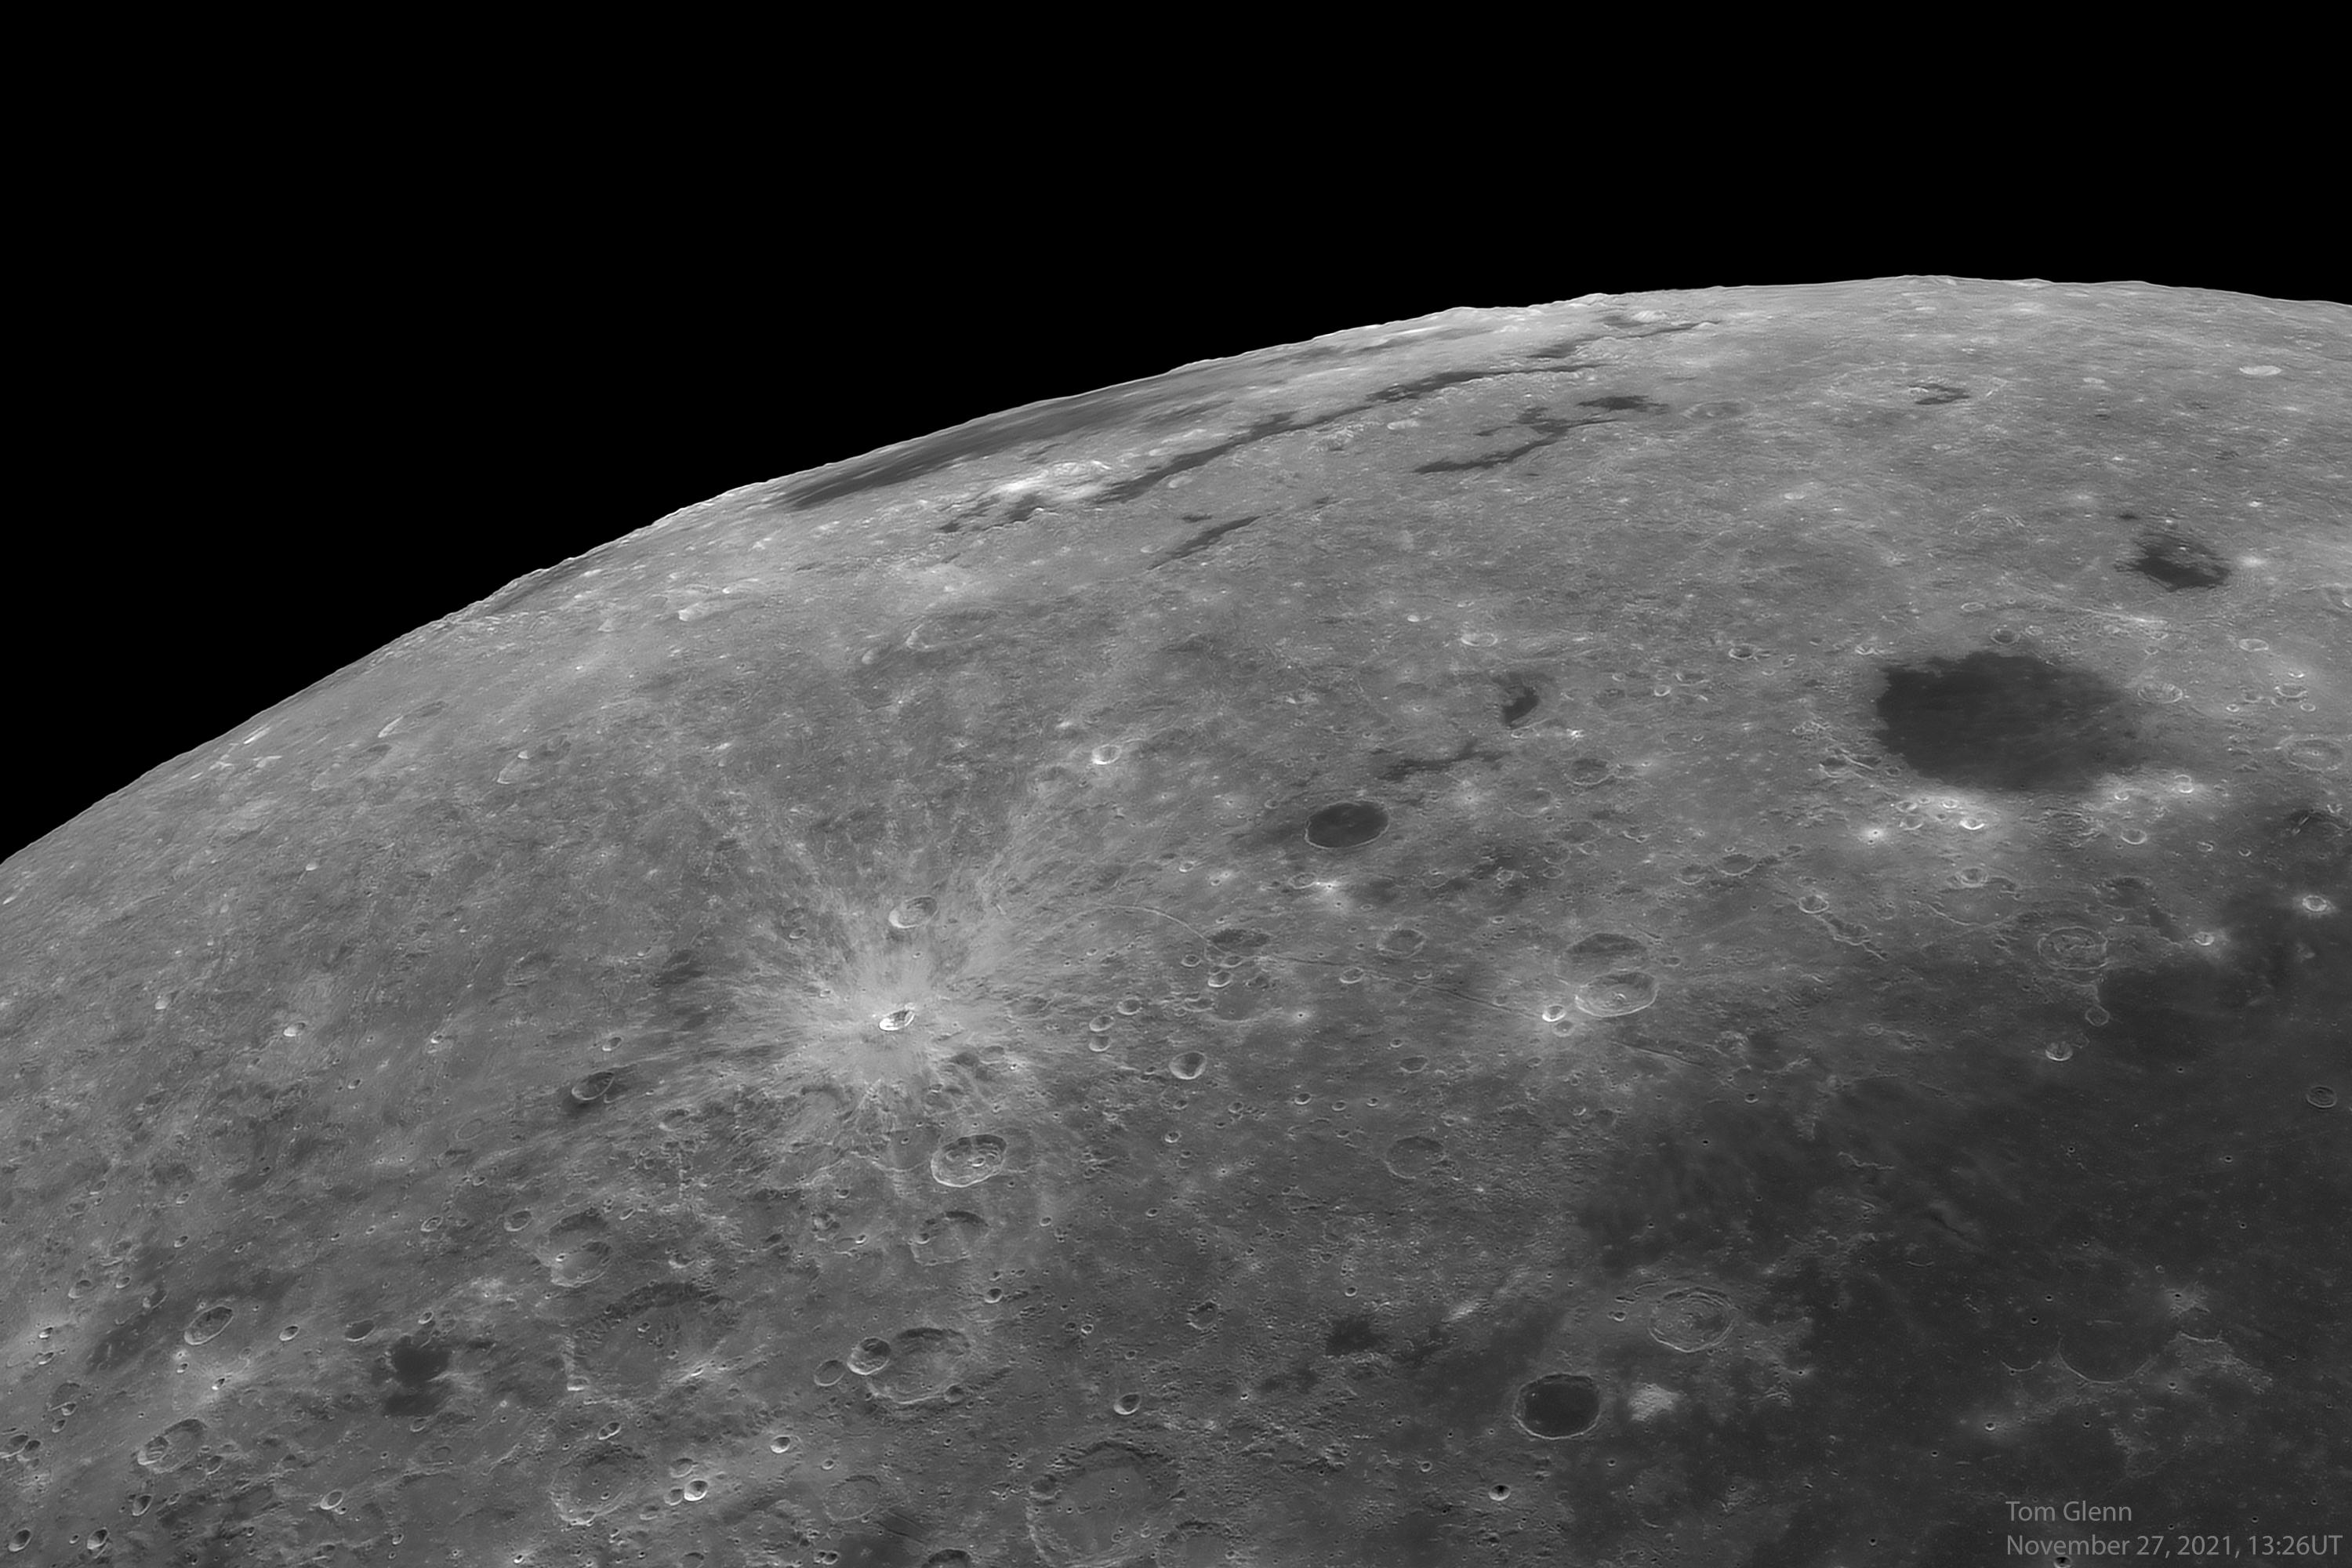 صورة مقرّبة لجزء من سطح القمر تظهر في منتصفه حفرة صدميّة صغيرة نسبيّاً ذات أشعّة بينما يظهر حوض صدمي يظهر مقصَّراً على امتداد الحافة في أعلى المنتصف